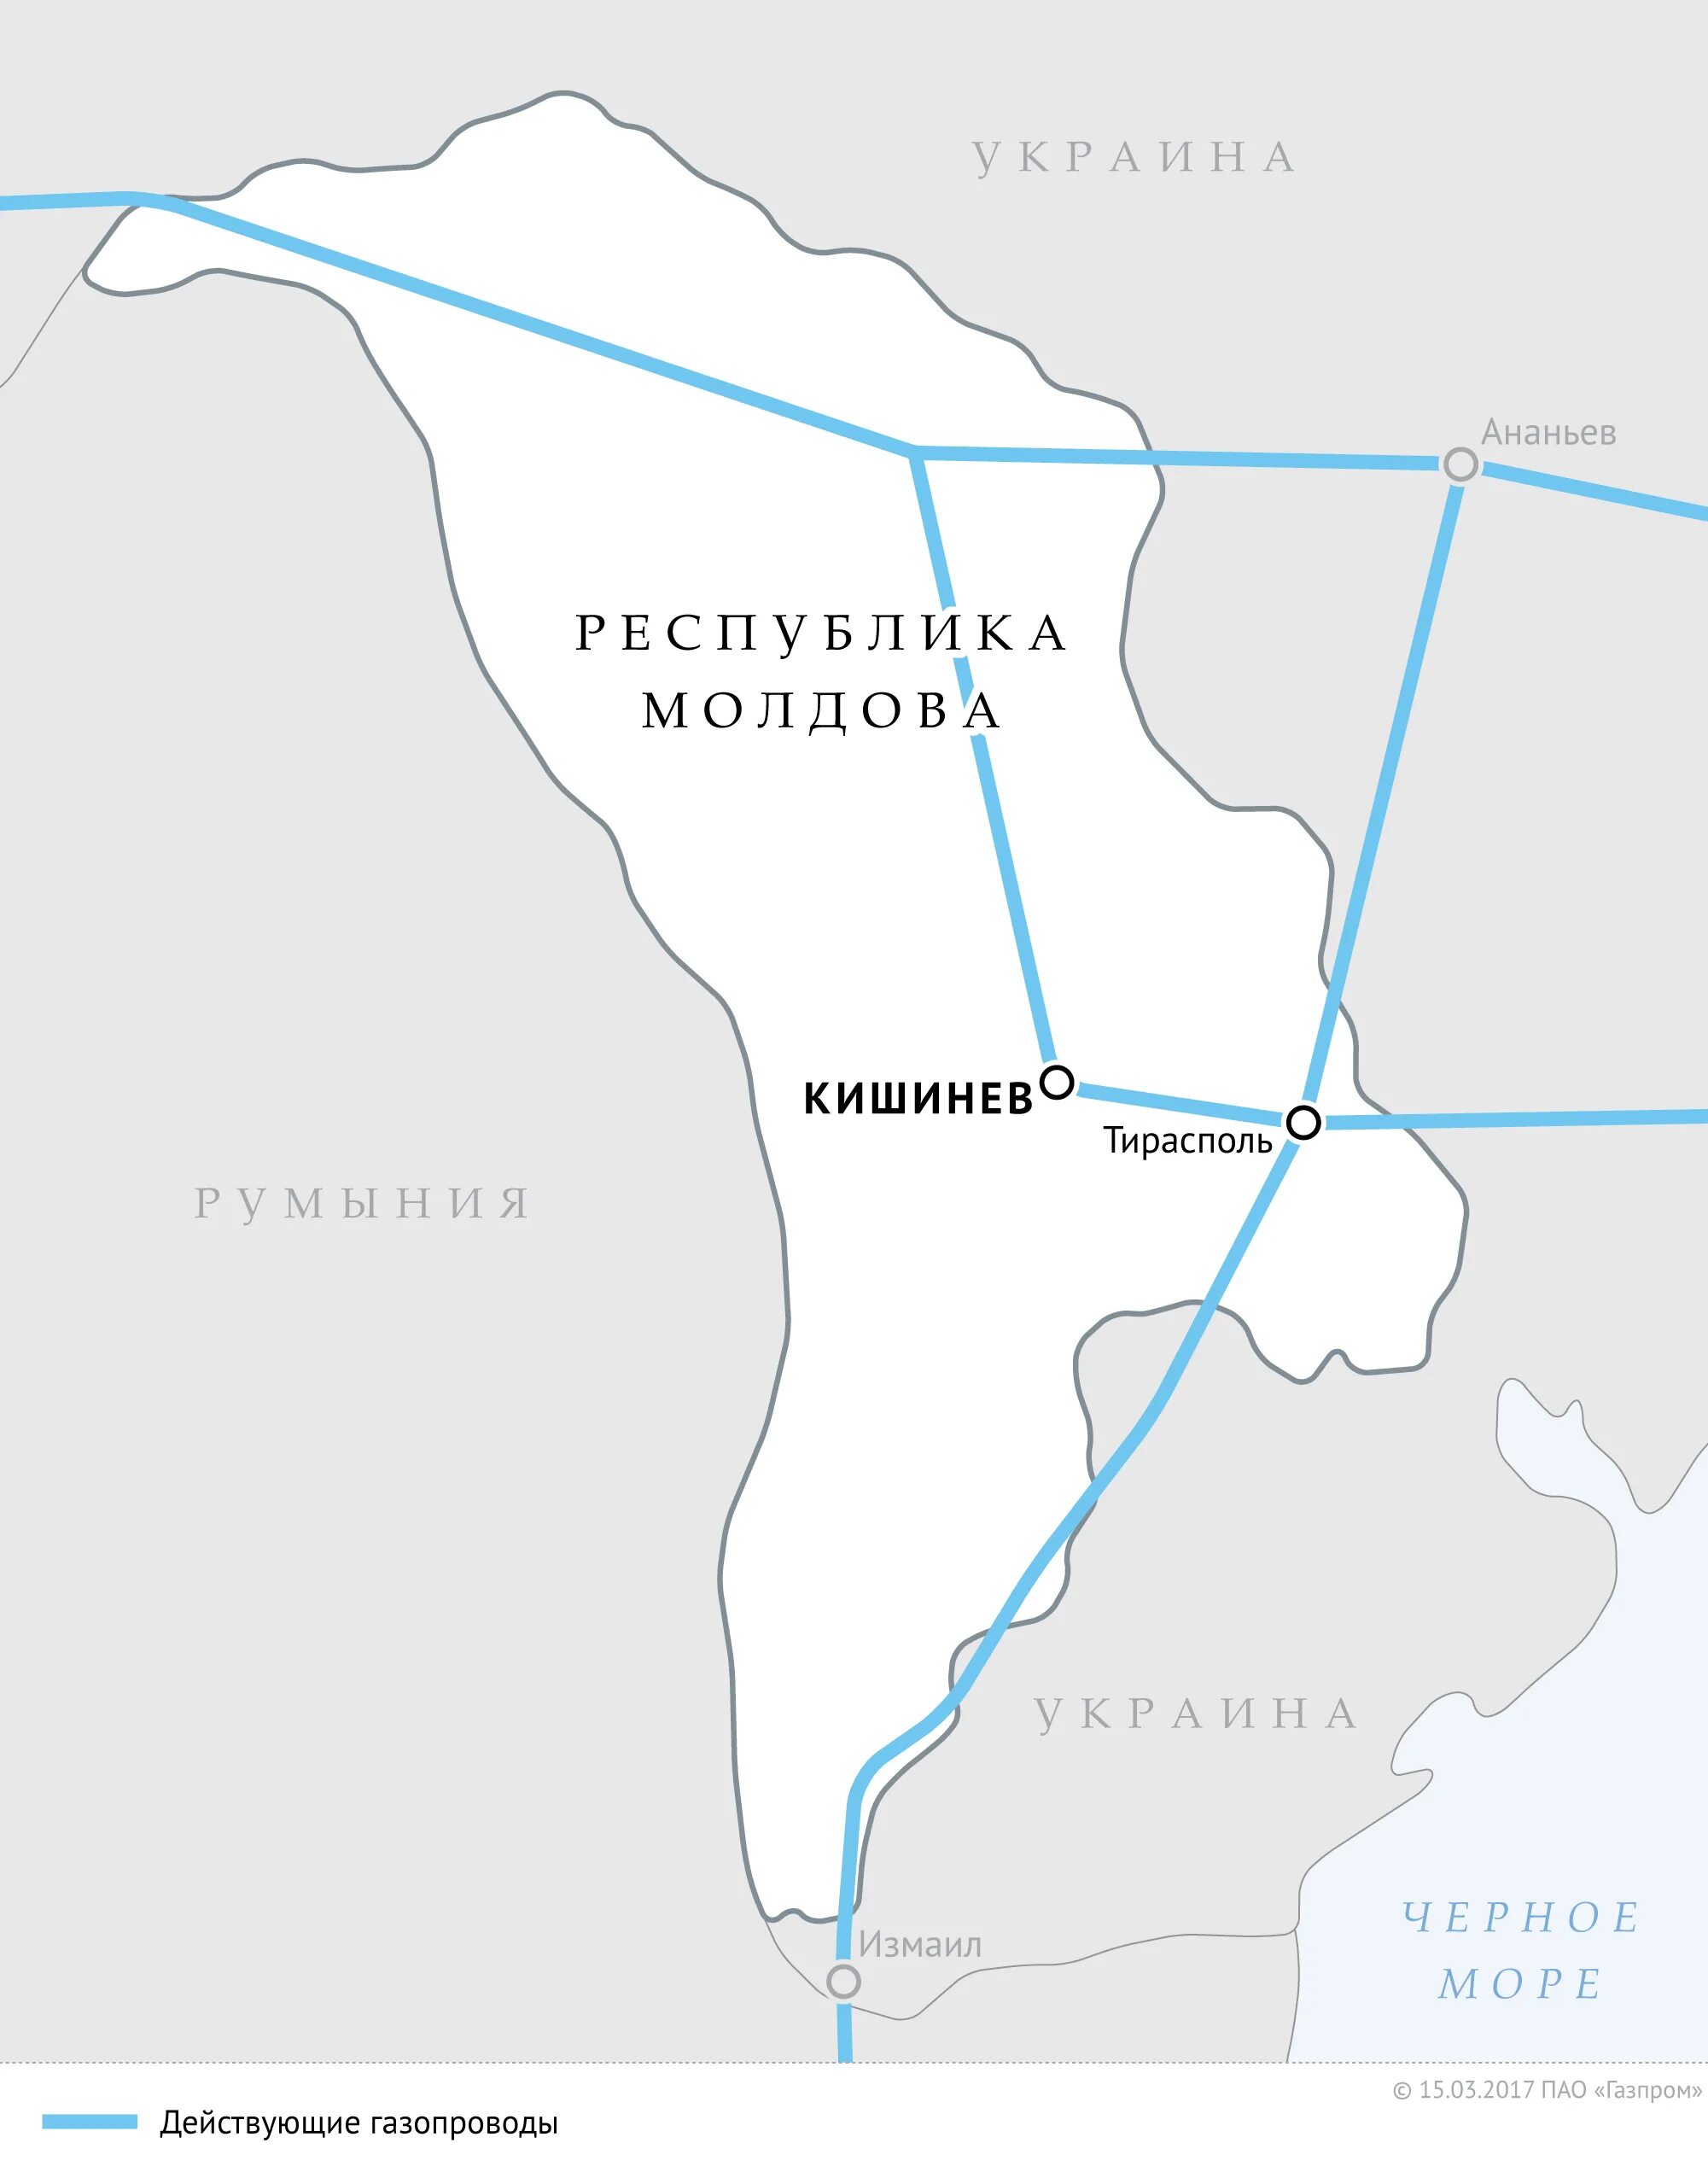 Газопровод в Молдавию на карте. Газовый трубопровод в Молдавию. Газовая магистраль в Приднестровье. Карта газопровода в Молдавию и Приднестровье. Кишинев схема